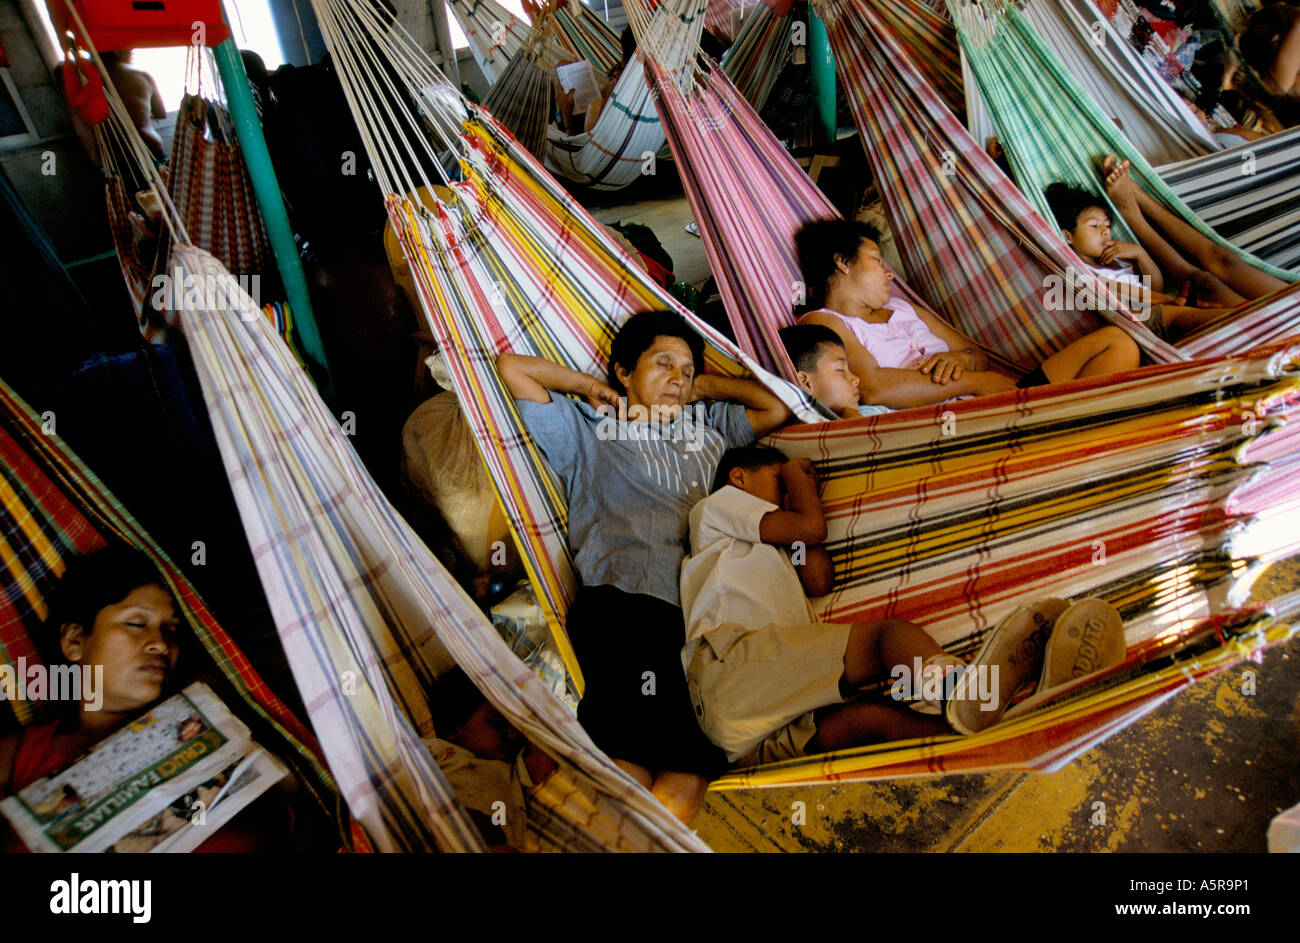 Los pasajeros duermen en condiciones de hacinamiento, en hamacas durante dos días de viaje en barco a lo largo de río Huallaga RUMBO A IQUITOS DEC 20 Foto de stock